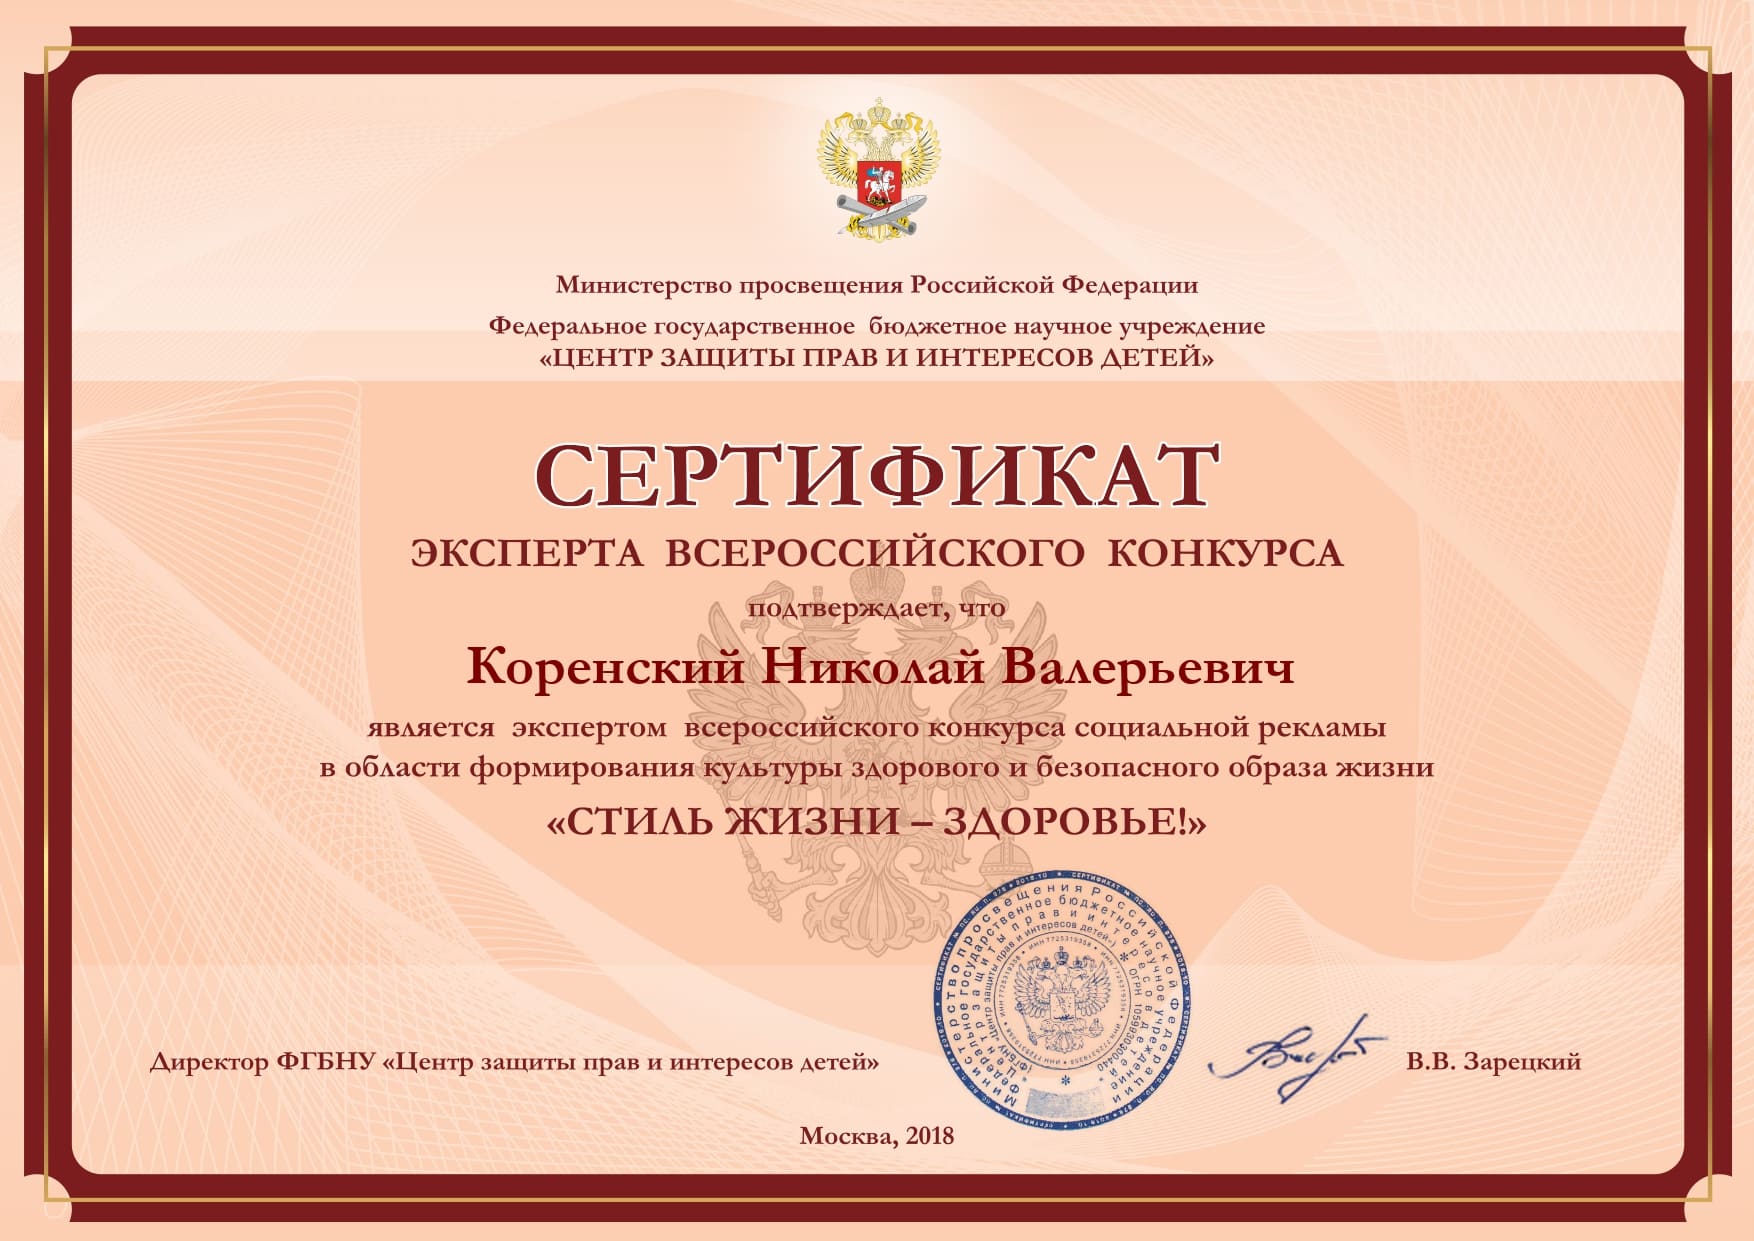 Сертификат эксперта Всероссийского конкурса Стиль жизни Здоровье (Коренский Николай Валерьевич) 2019, Москва, Россия